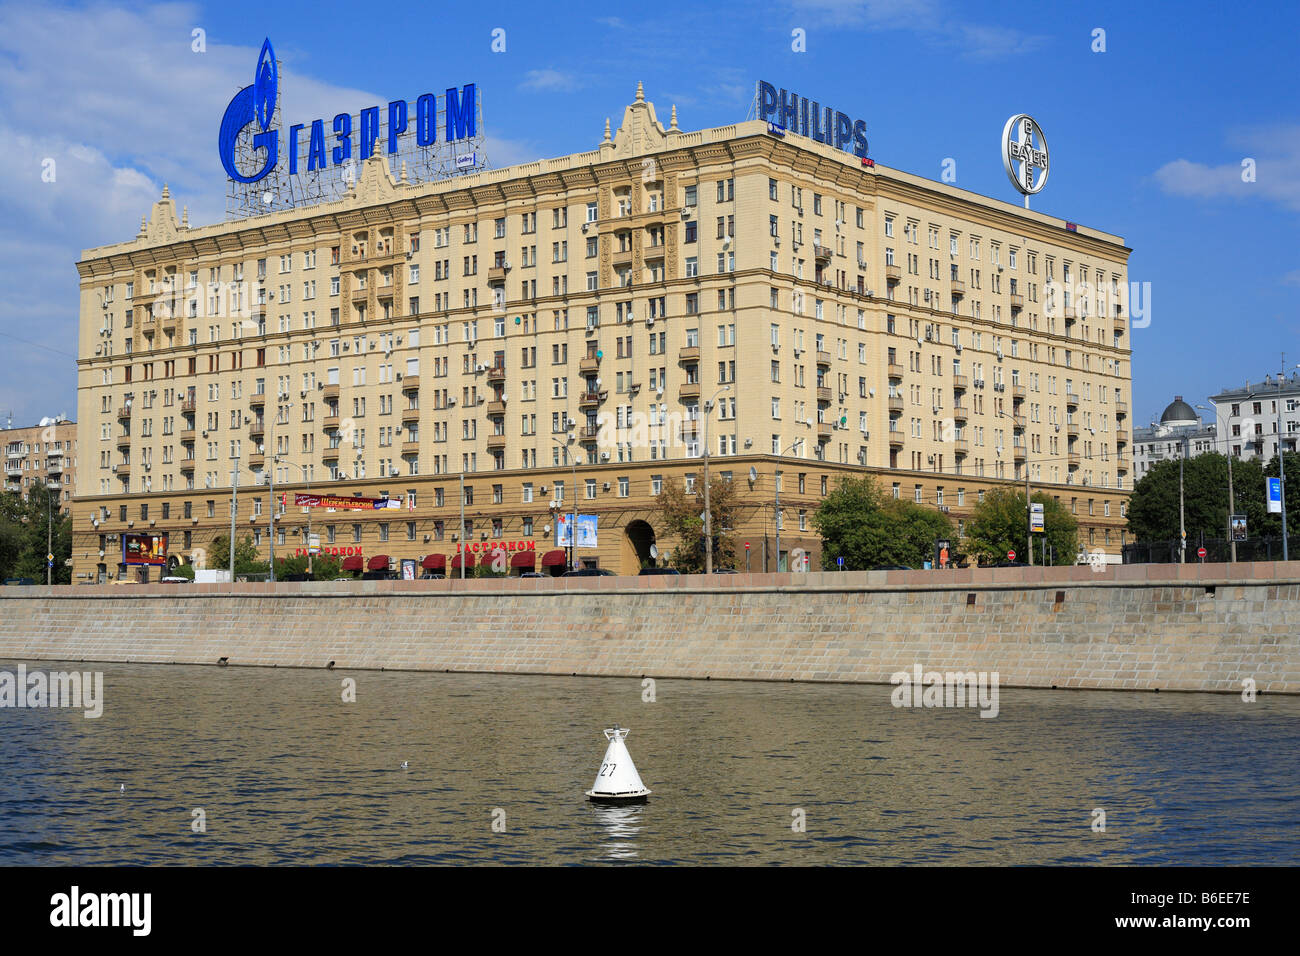 Haus mit Werbung von "Gazprom", Blick vom Fluss Moskwa, Moskau, Russland Stockfoto